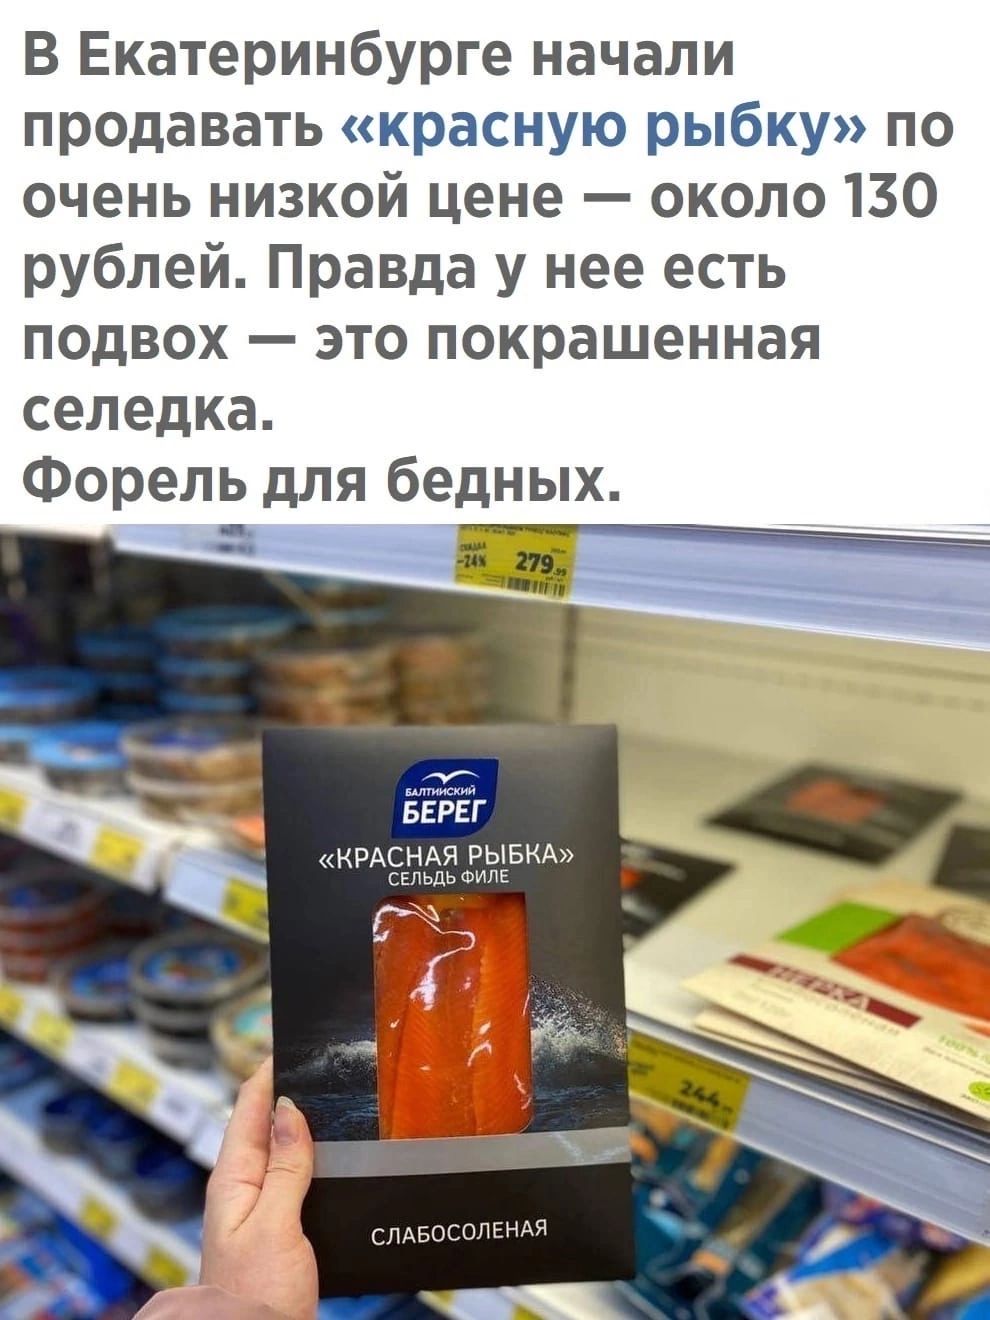 В Екатеринбурге начали продавать красную рыбку по очень низкой цене около 130 рублей Правда у нее есть подвох это покрашенная селедка Форель для бедных ЬЕЬЁг А или вы